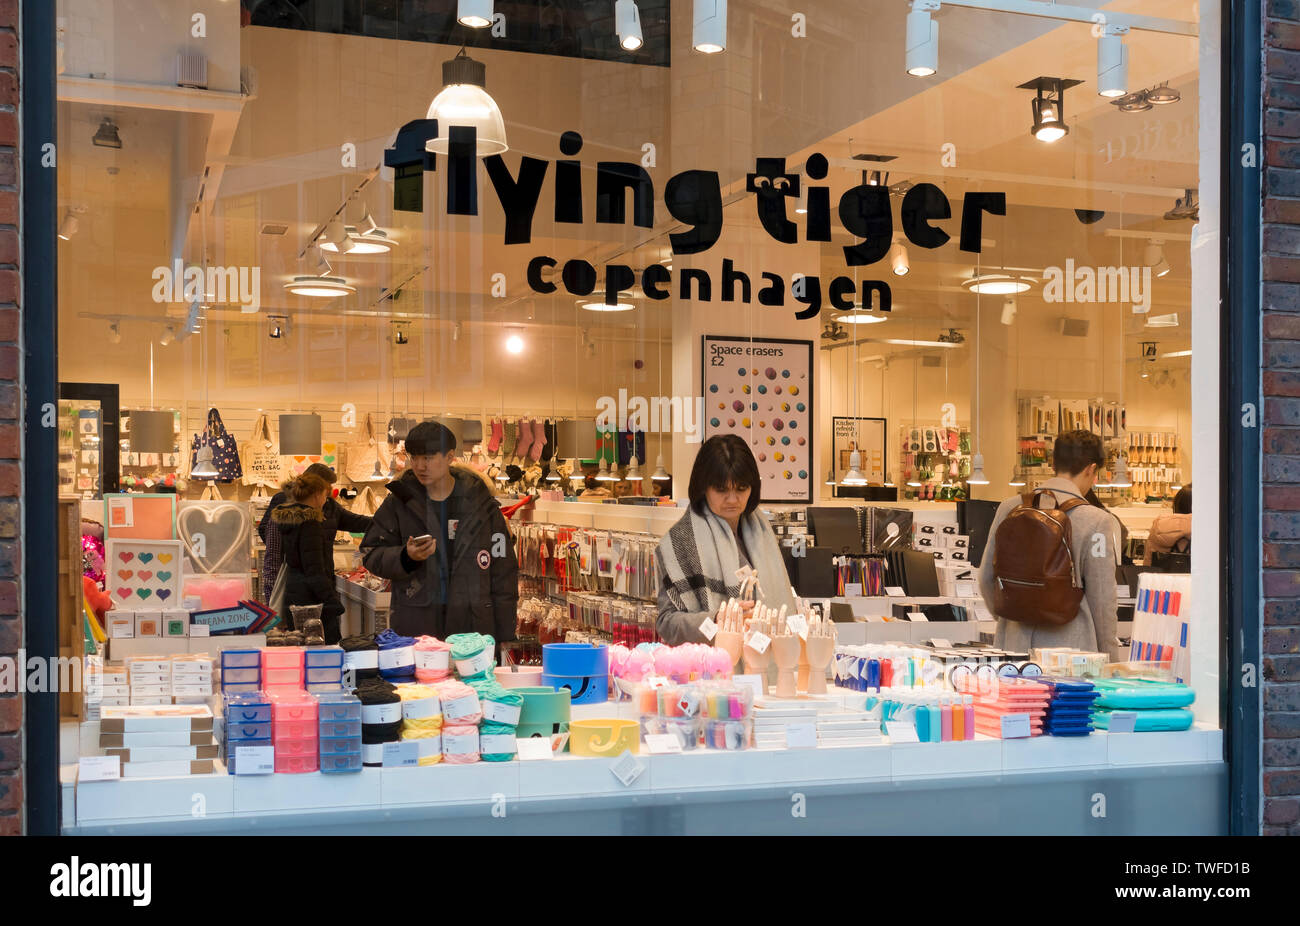 Flying tiger copenhagen store -Fotos und -Bildmaterial in hoher Auflösung –  Alamy